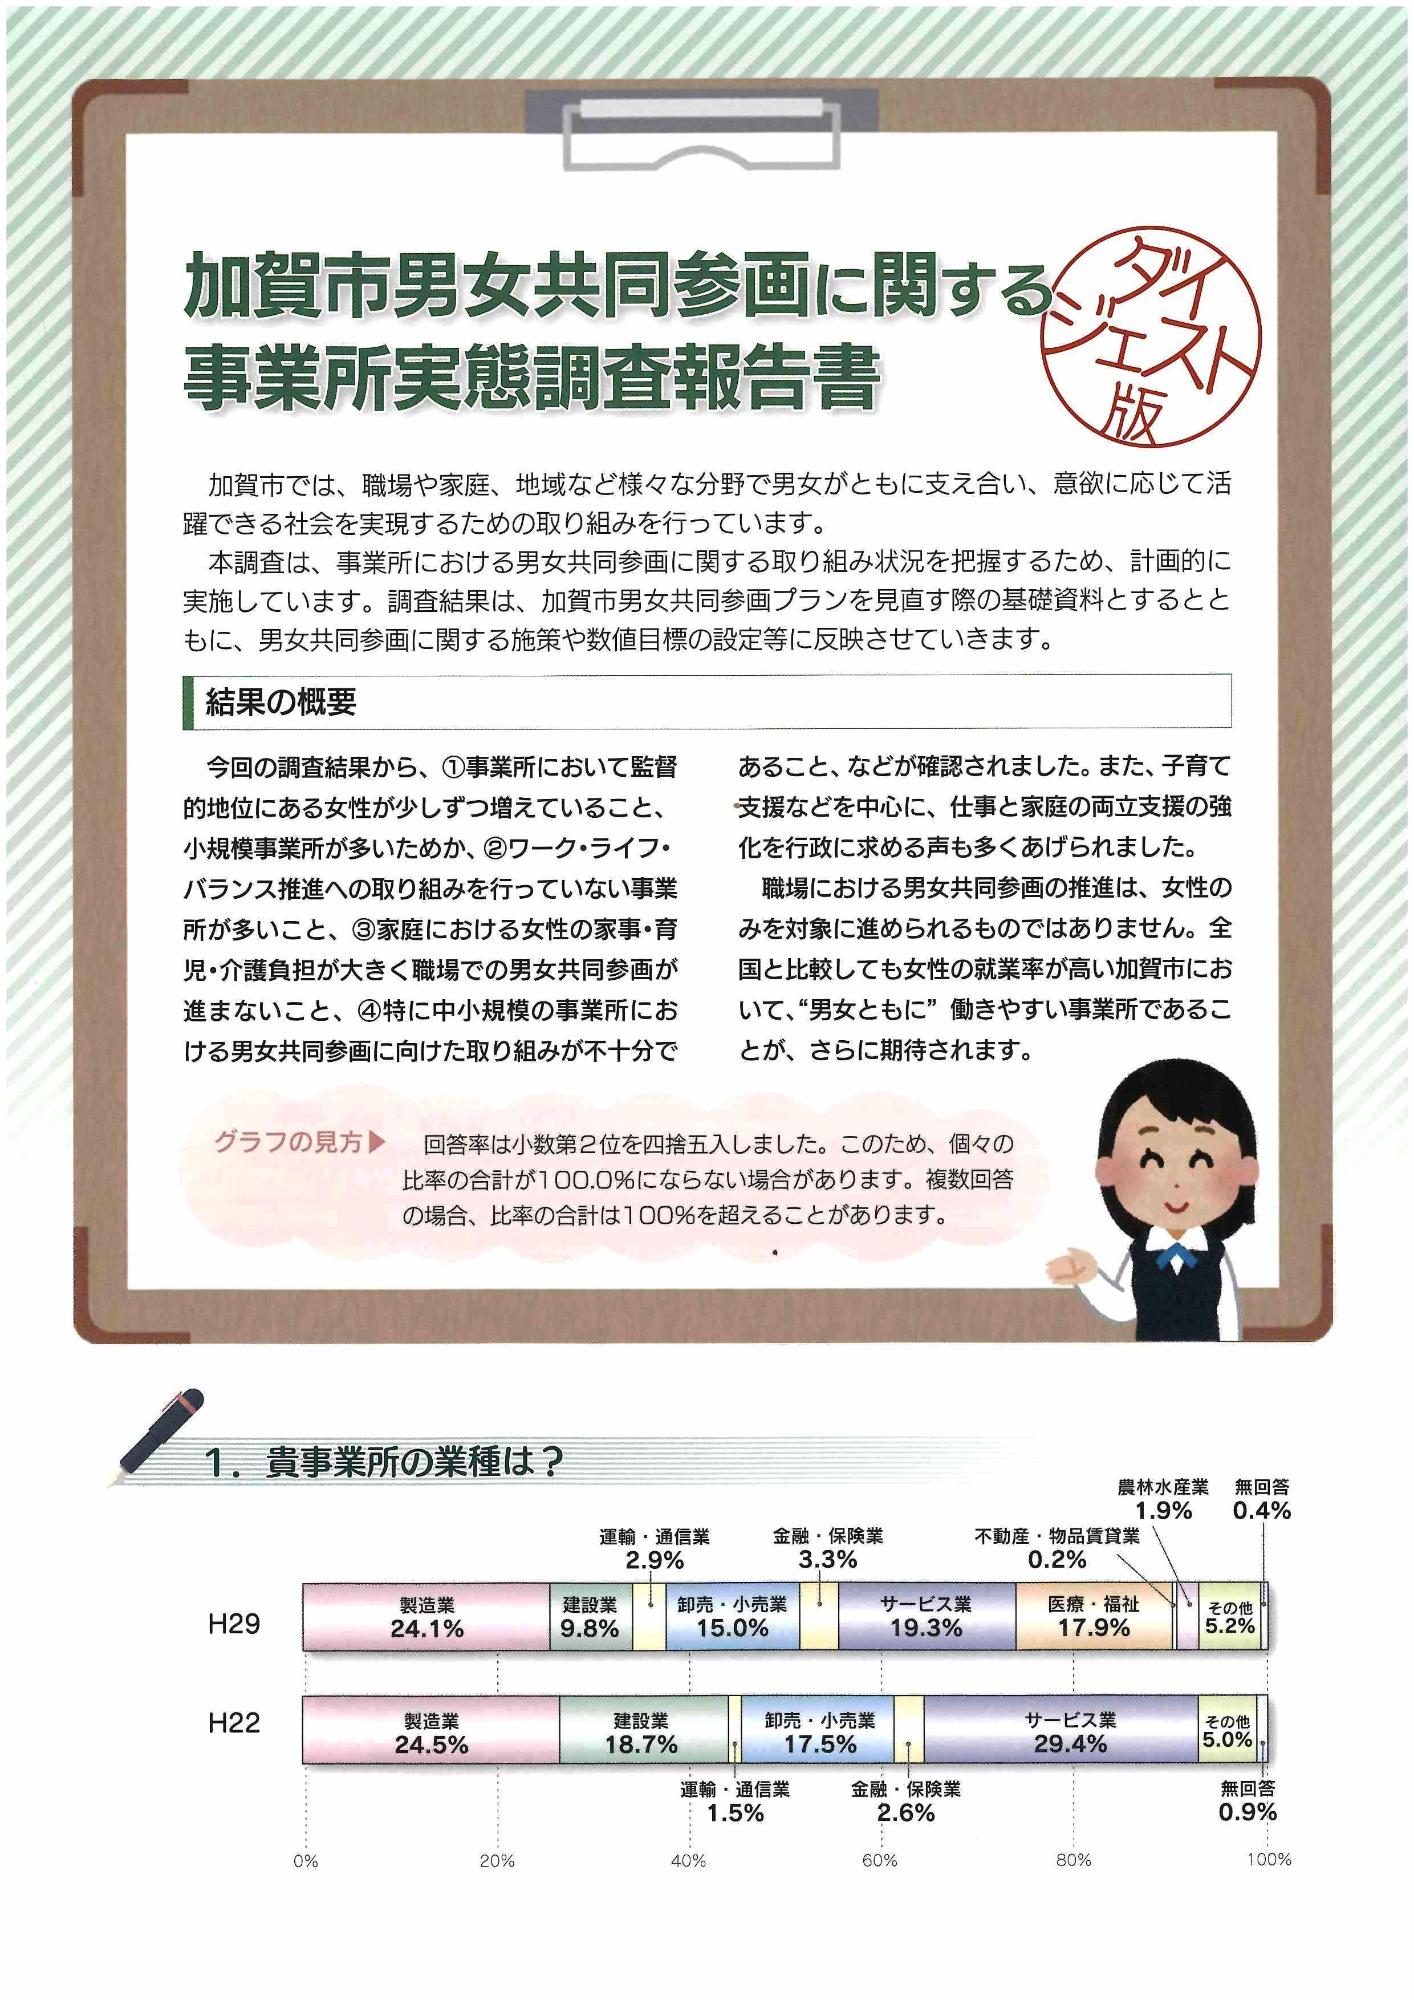 加賀市男女共同参画に関する事業所実態調査報告書ダイジェスト版